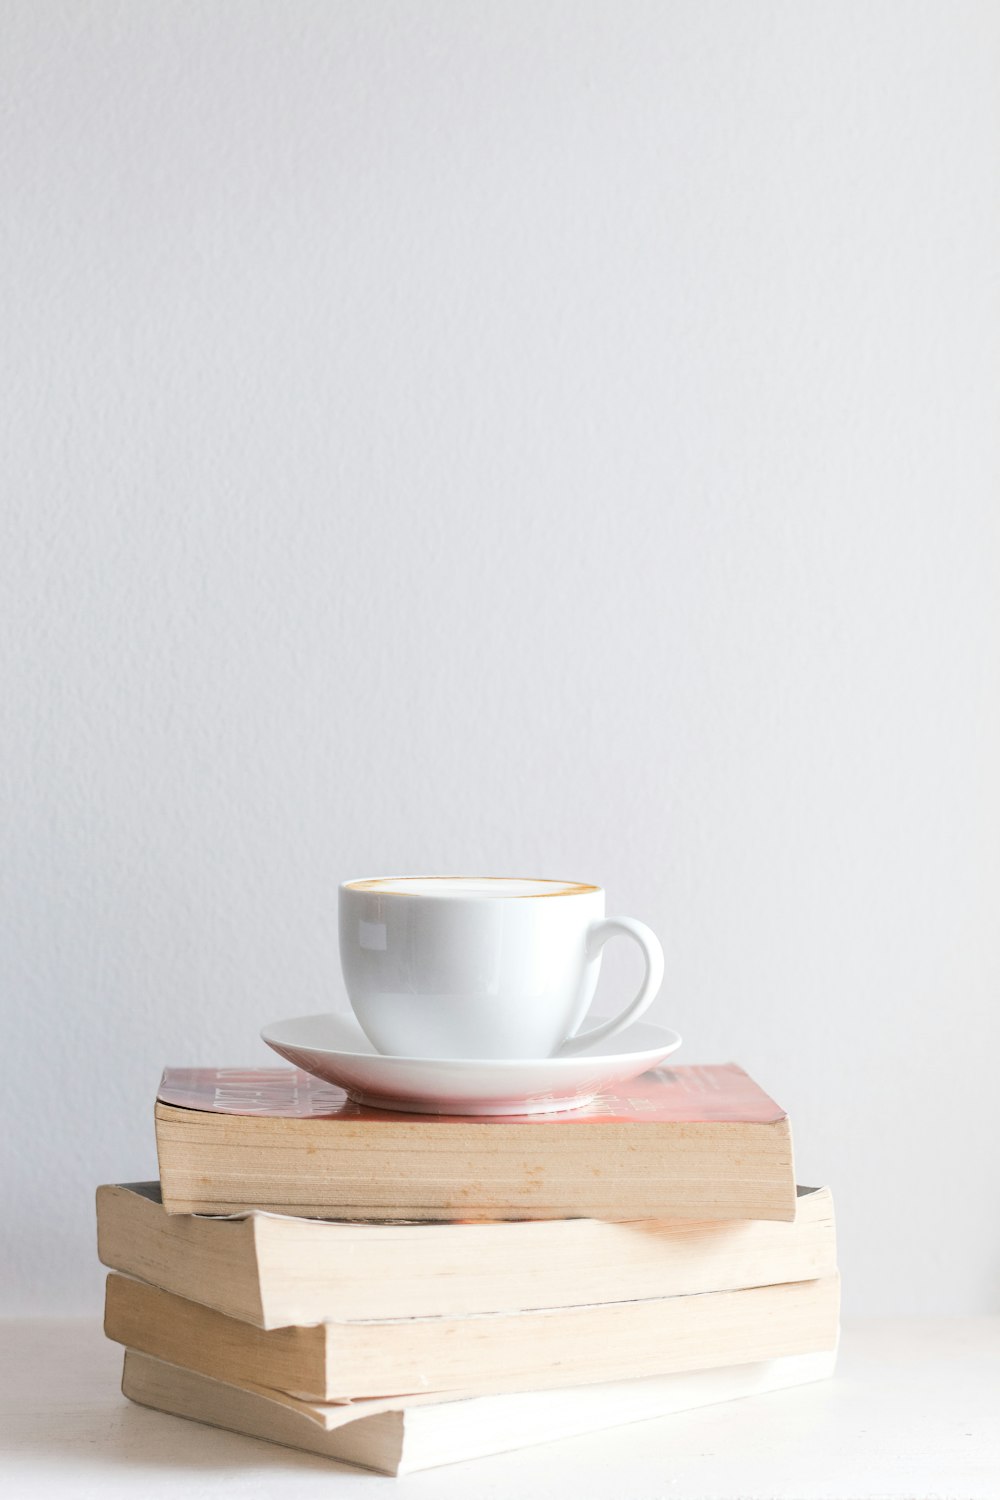 white mug with saucer on piled books